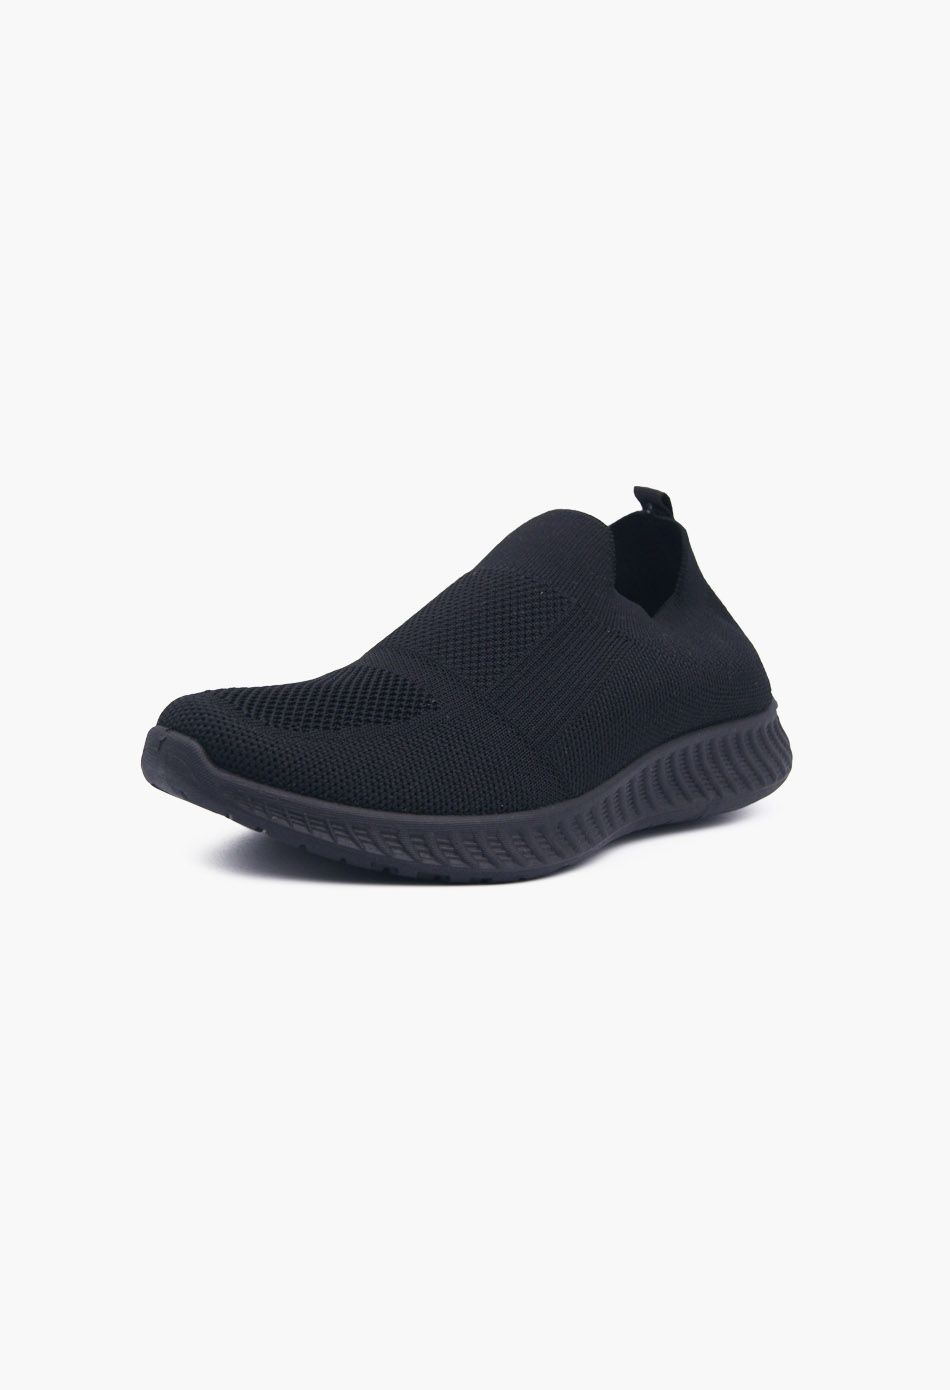 Ανδρικά Αθλητικά Παπούτσια για Τρέξιμο τύπου κάλτσα Μαύρο / V20-black ΑΘΛΗΤΙΚΑ & SNEAKERS joya.gr